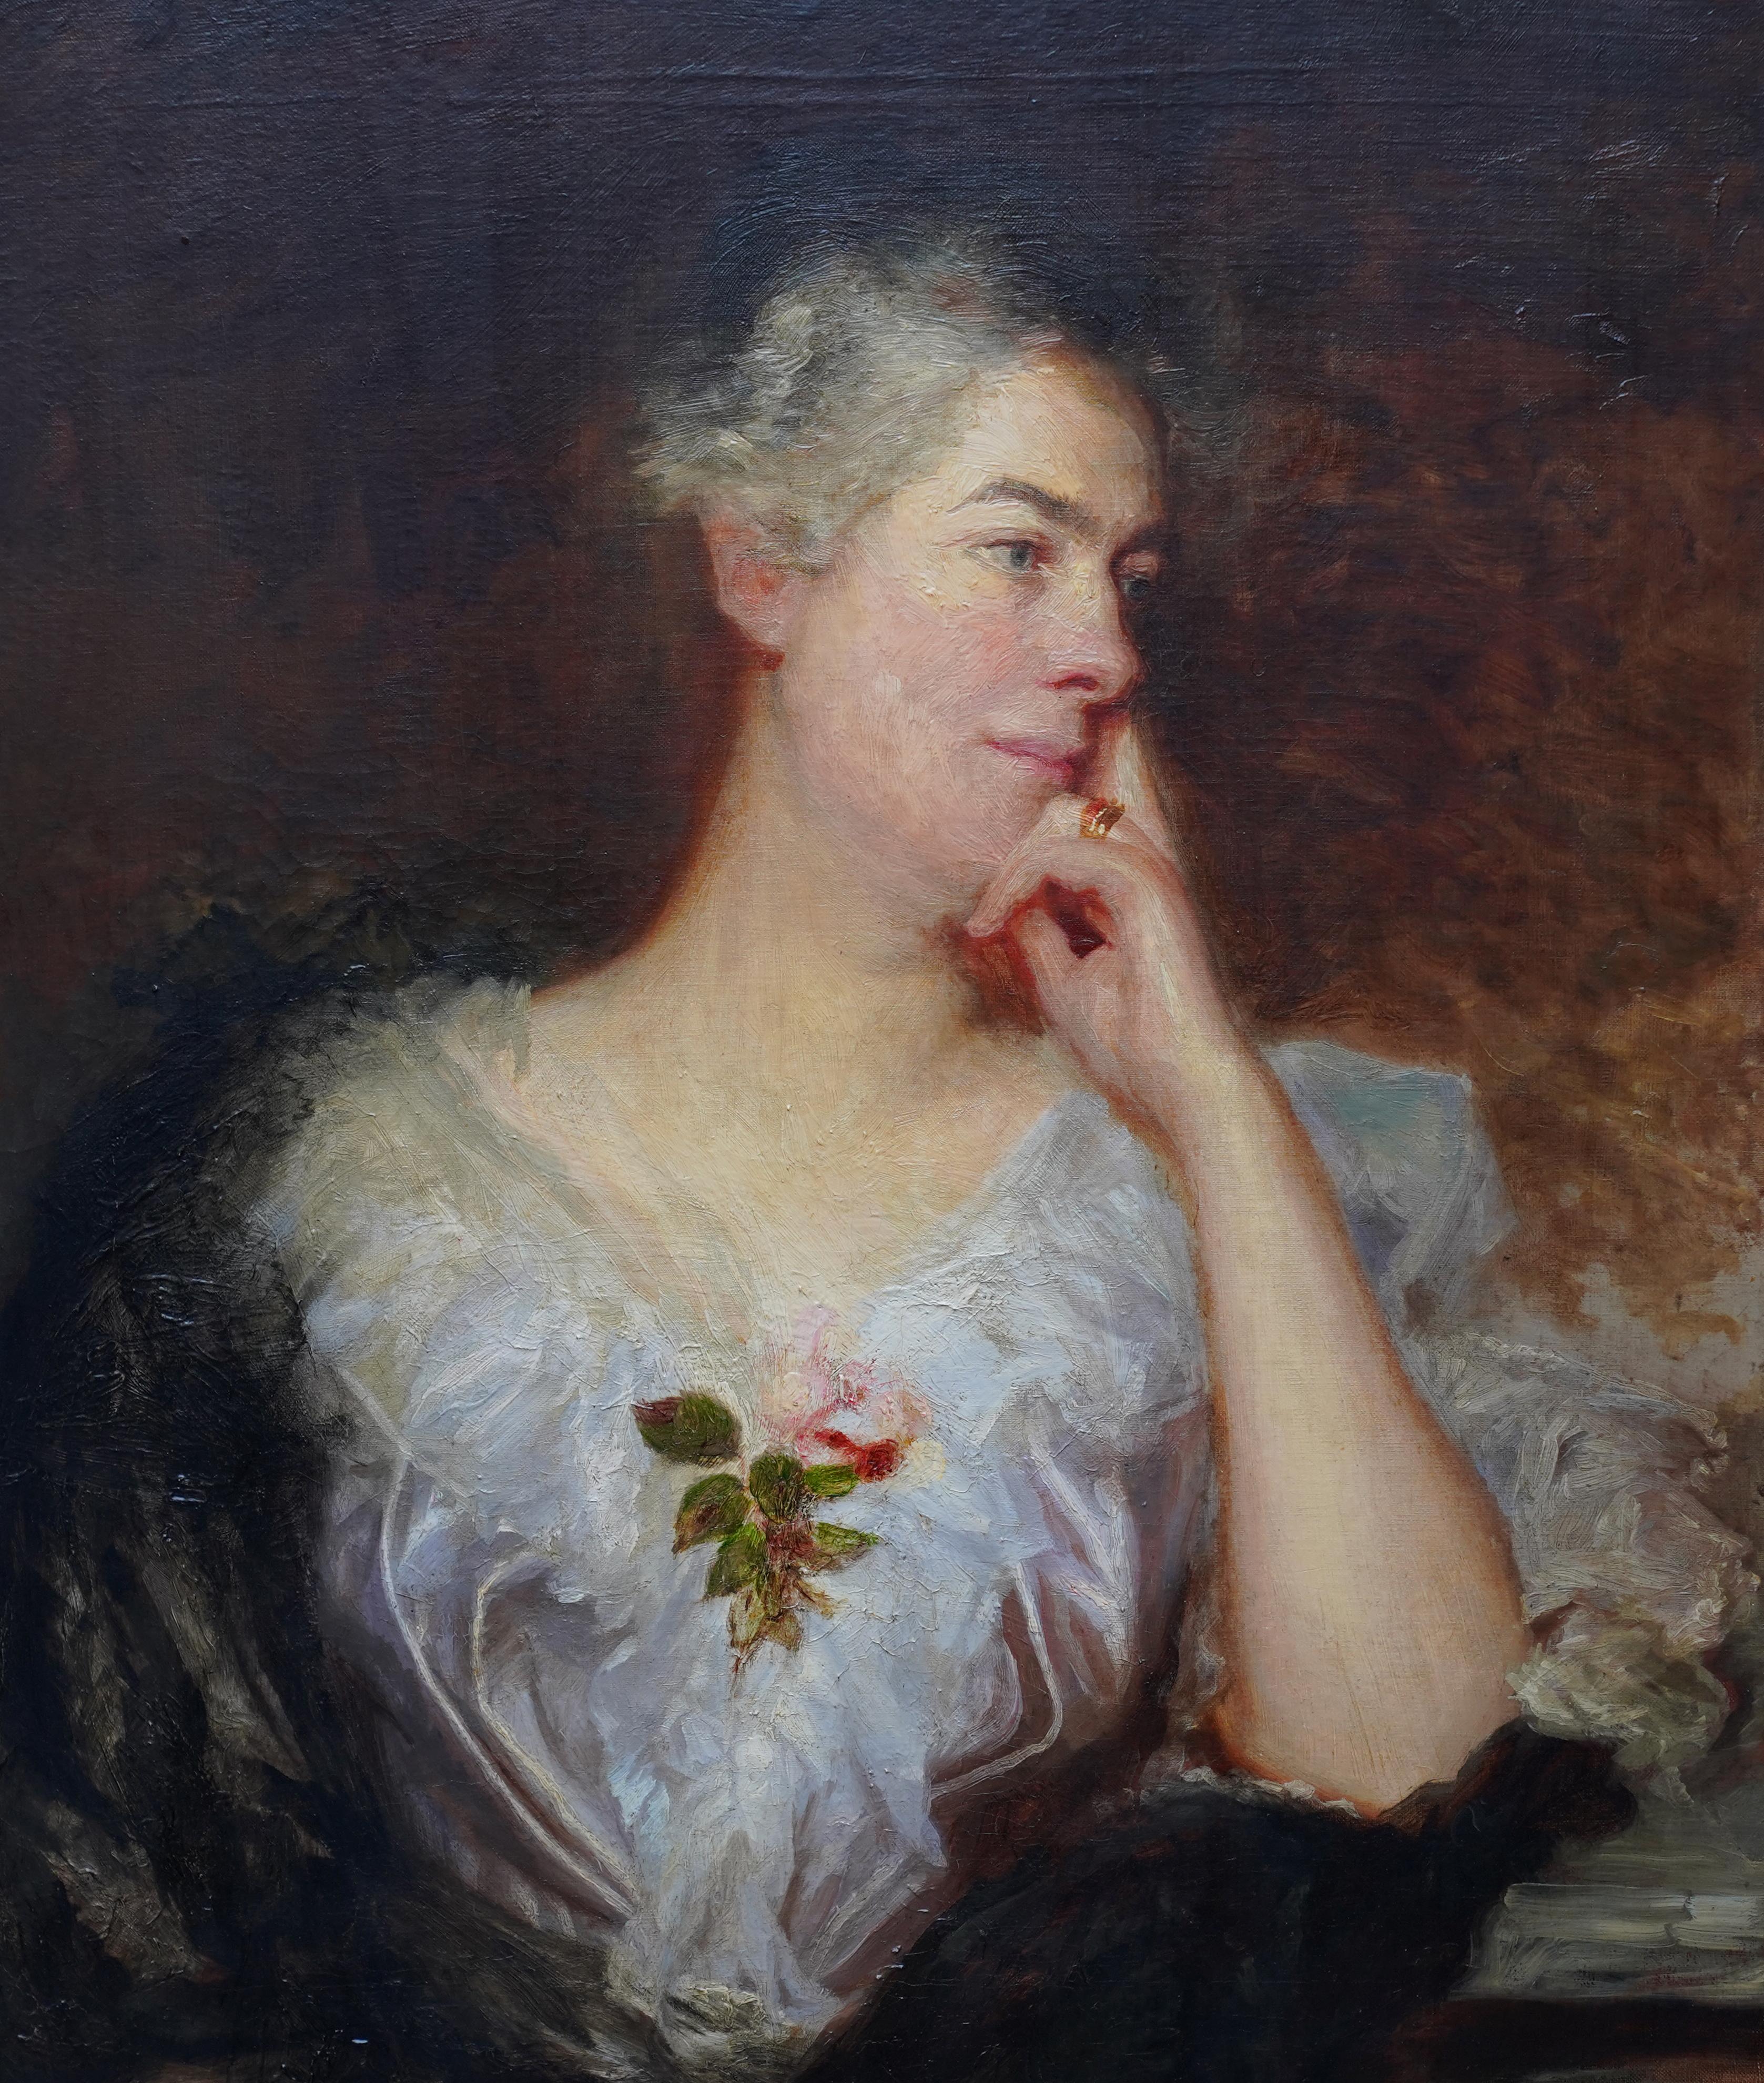 Portrait d'une femme avec une rose - Art britannique - Peinture à l'huile d'un portrait de maître ancien - Painting de William Etty (circle)